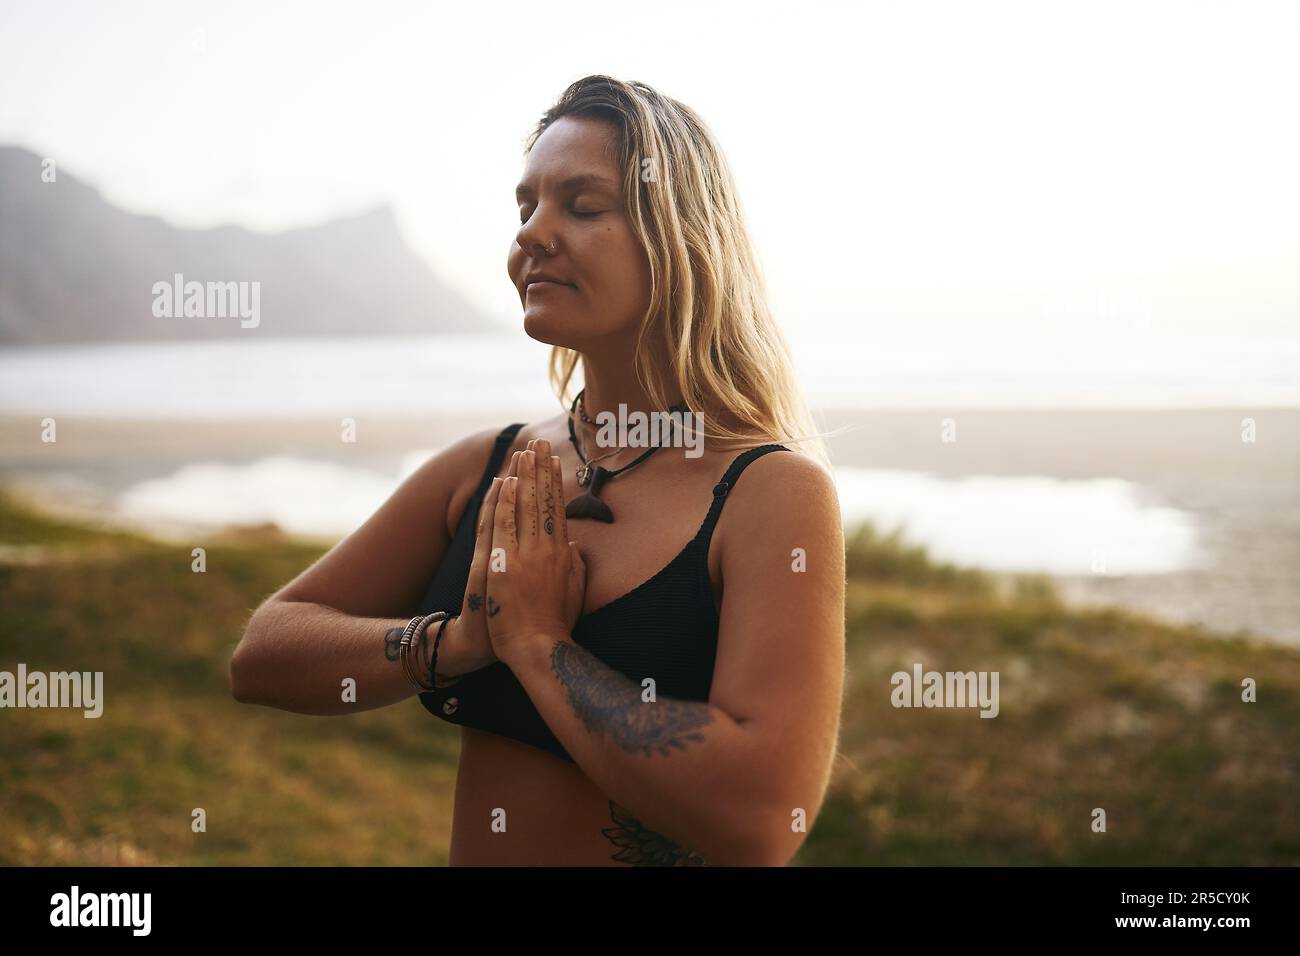 N'oubliez pas de faire preuve de gratitude à travers votre pratique de yoga. une jeune femme attirante debout seule et méditant pendant une journée de détente à l'extérieur. Banque D'Images